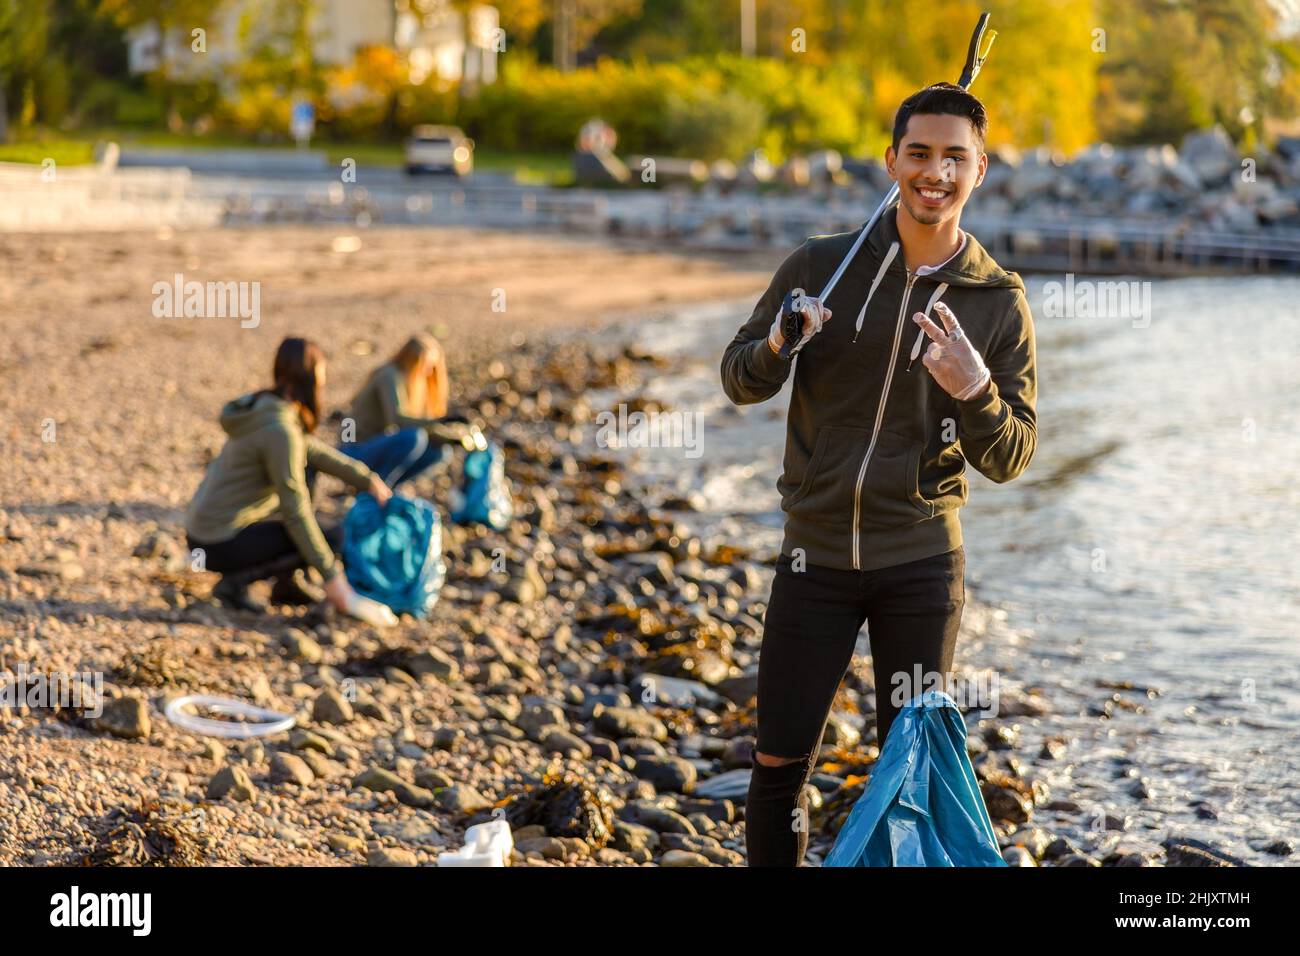 Fier homme nettoyant l'océan avec des bénévoles le jour ensoleillé Banque D'Images